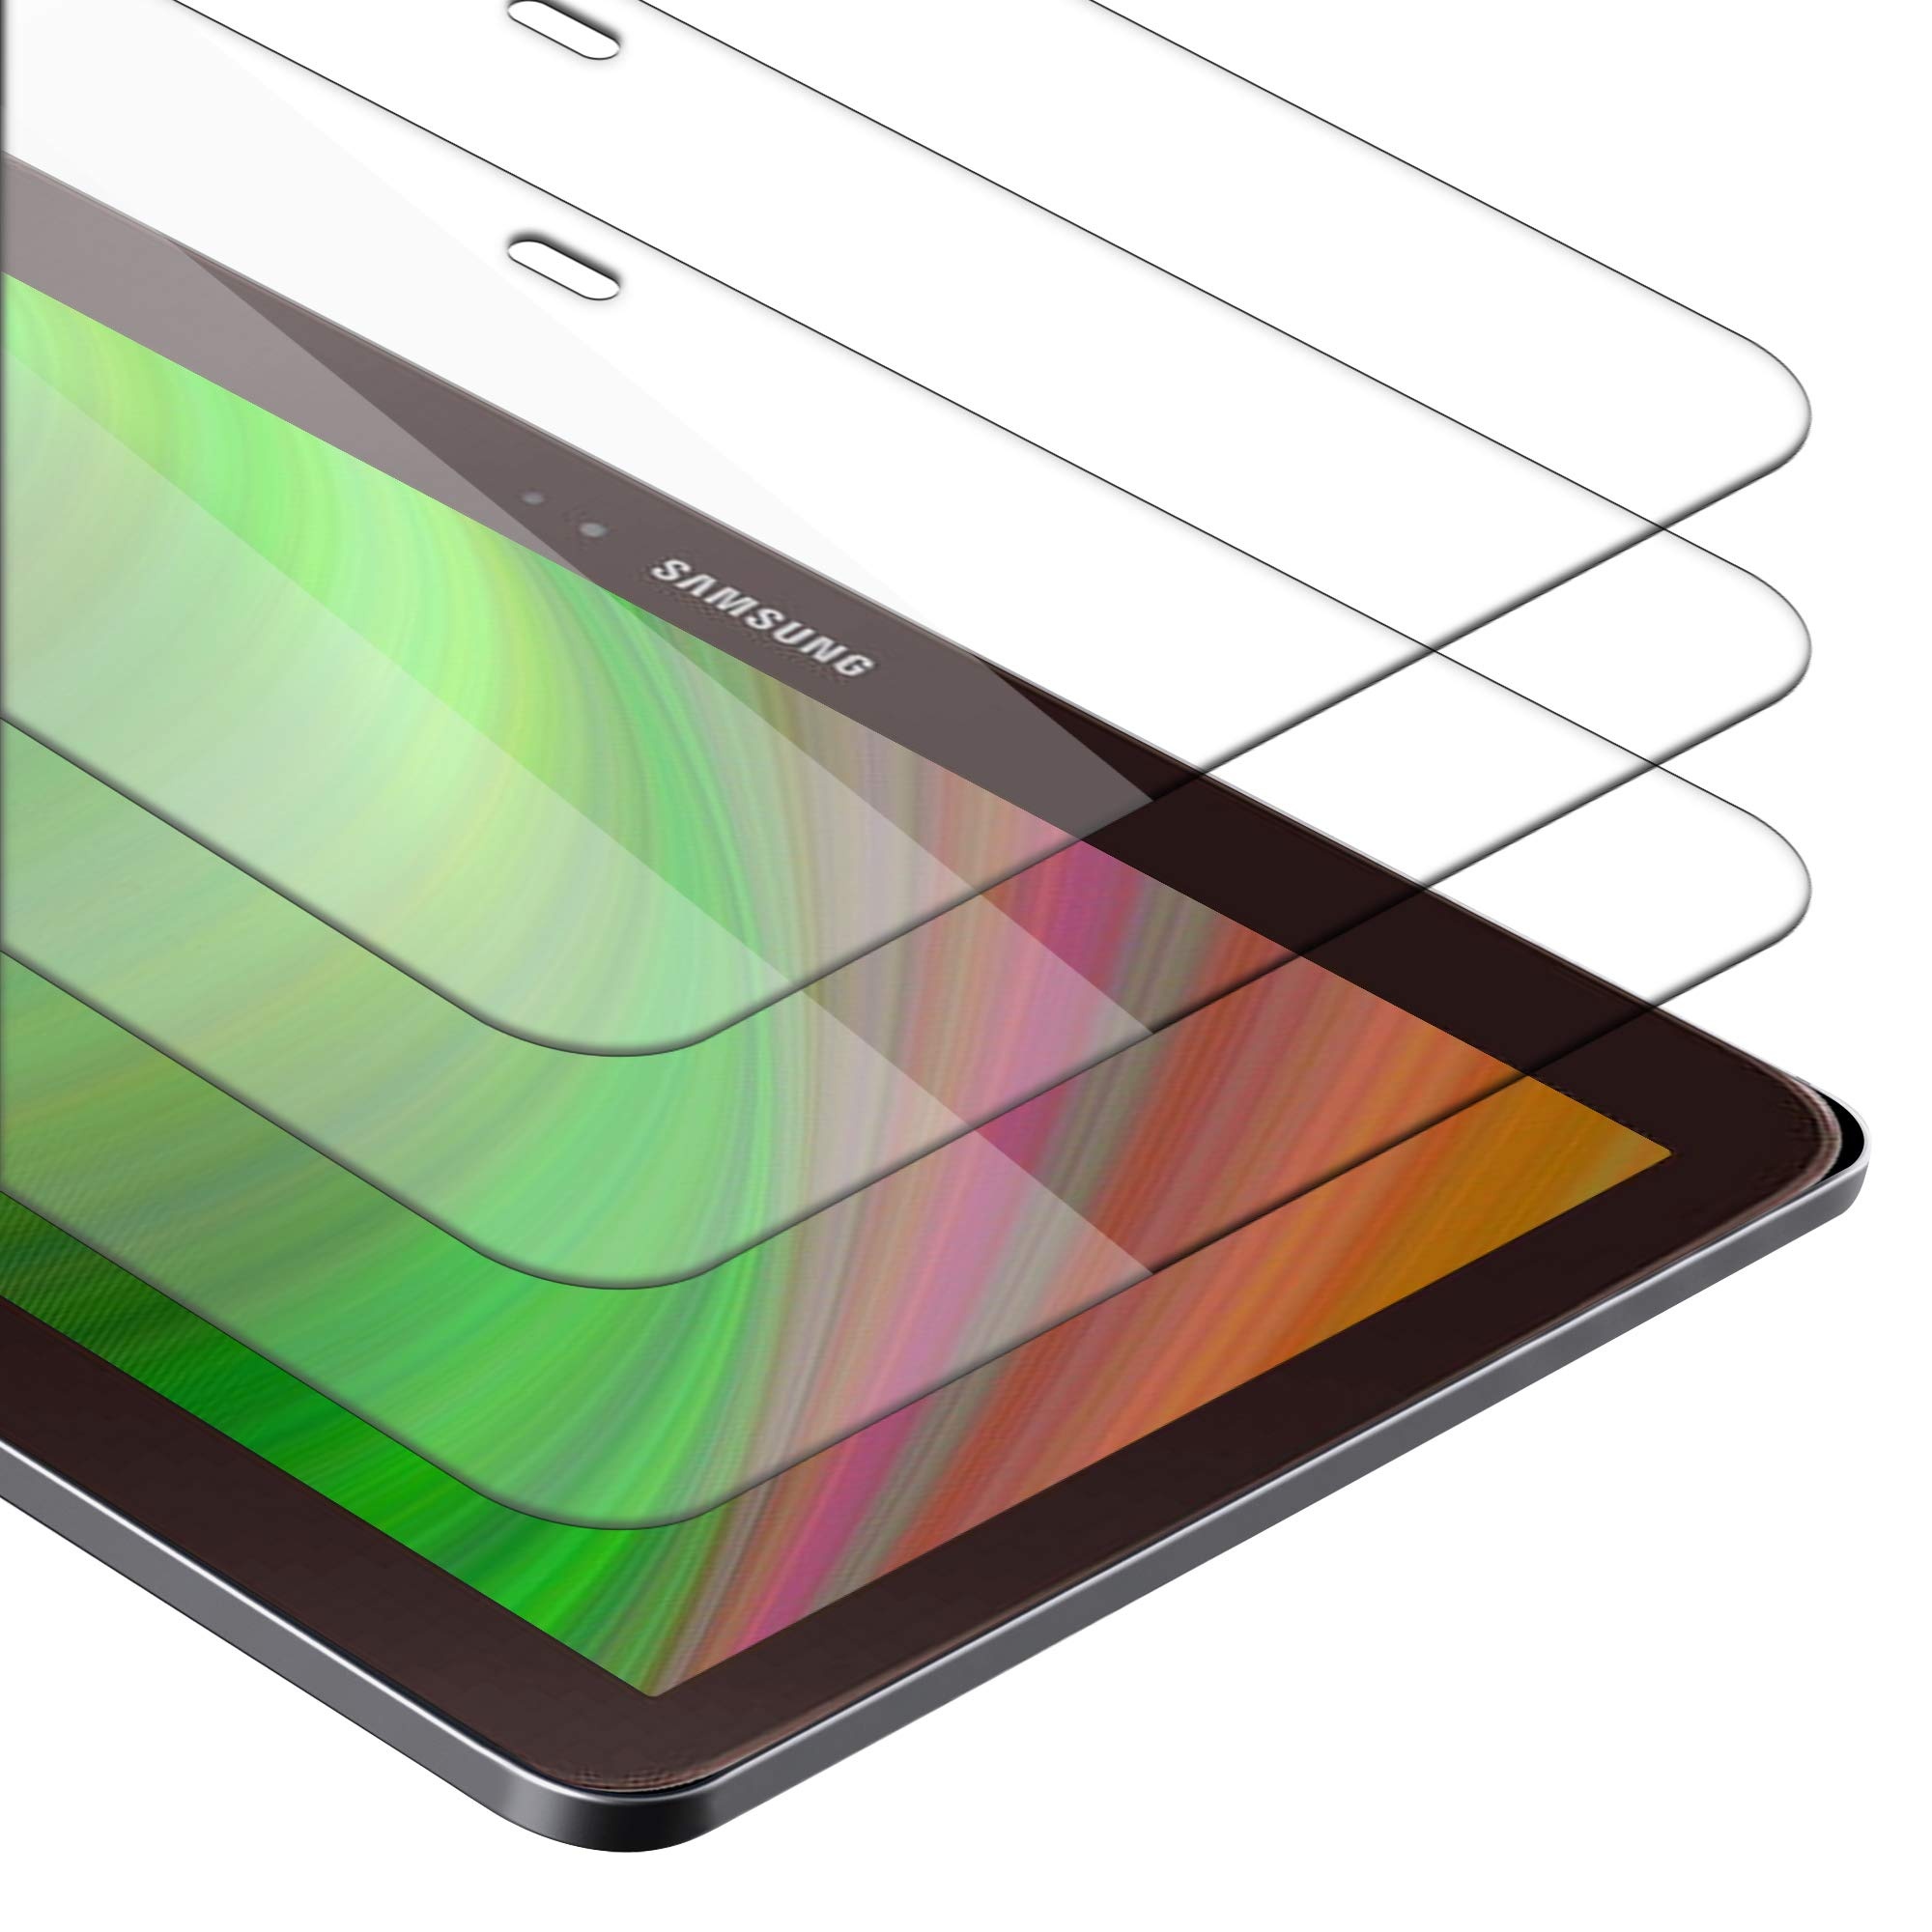 Cadorabo 3x Tablet Panzer Schutz Glas für Samsung Galaxy Tab 3 (10.1 Zoll) - 3 Stück Schutzfolie in Ultra-Klar Hüllen freundlich - Gehärtetes (Tempered) Glas Dipslayschutz Folie in 9H Anti Kratzer